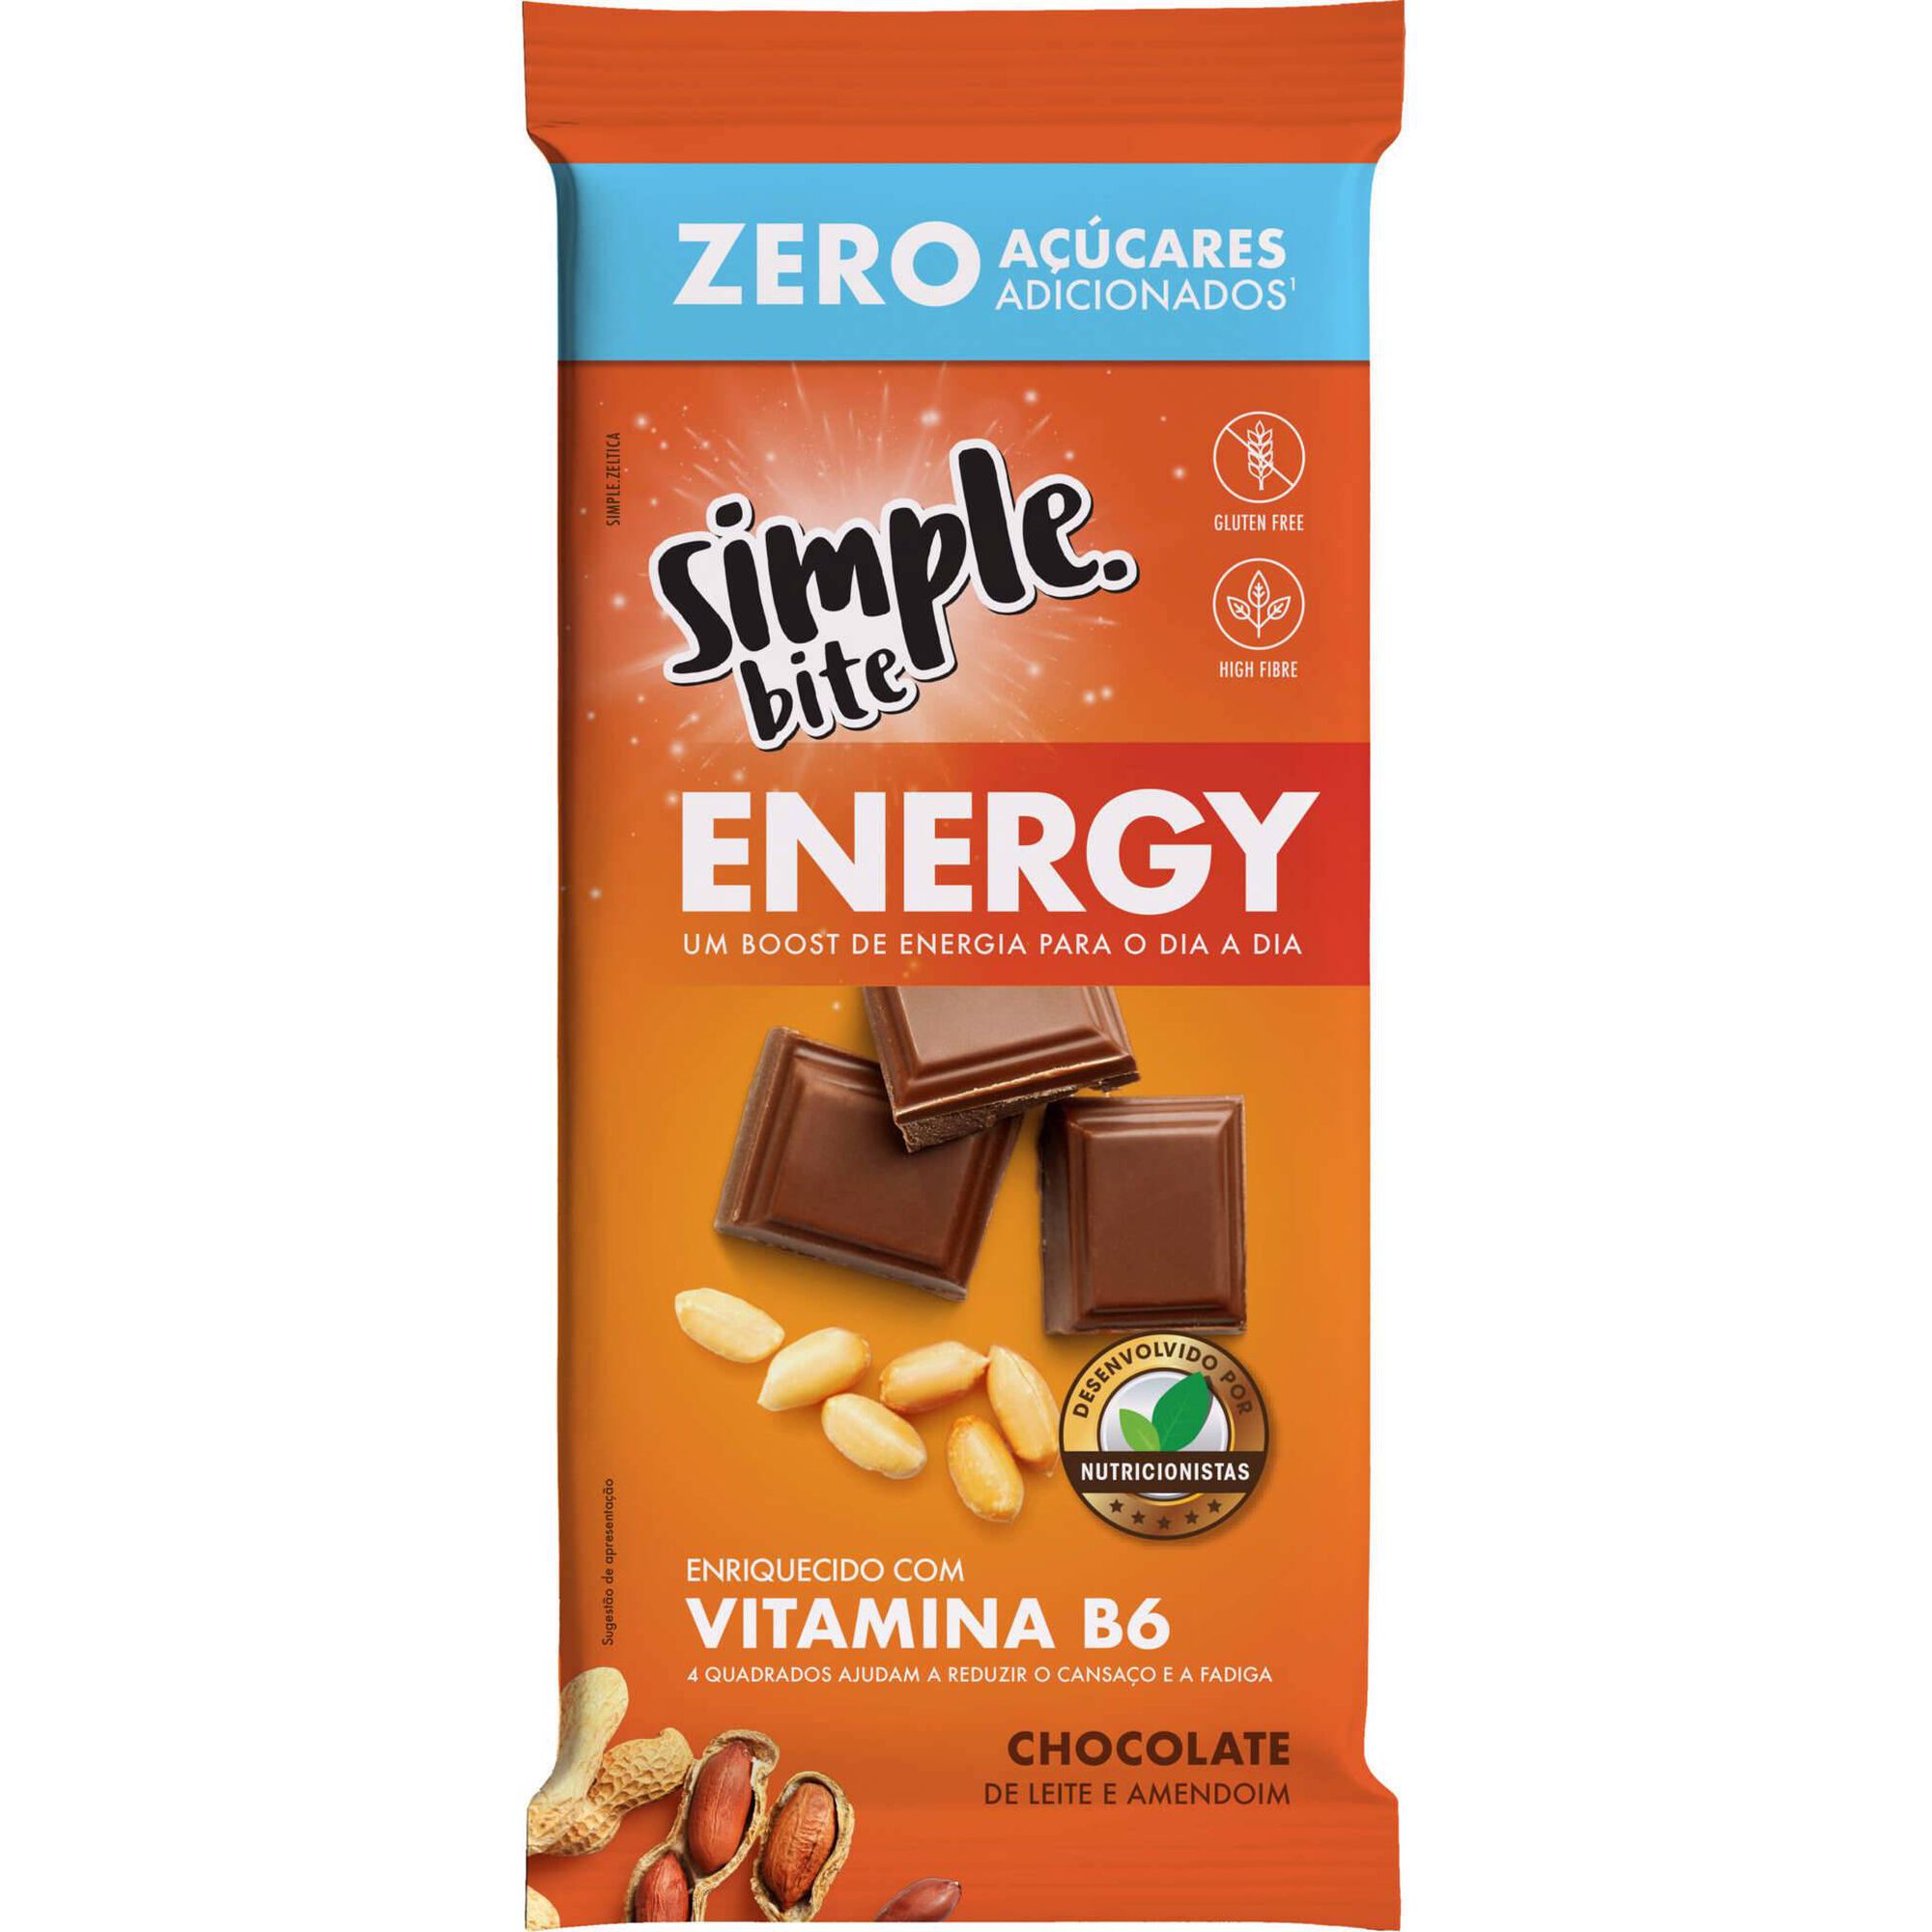 Tablete Chocolate de Leite e Amendoim Energy